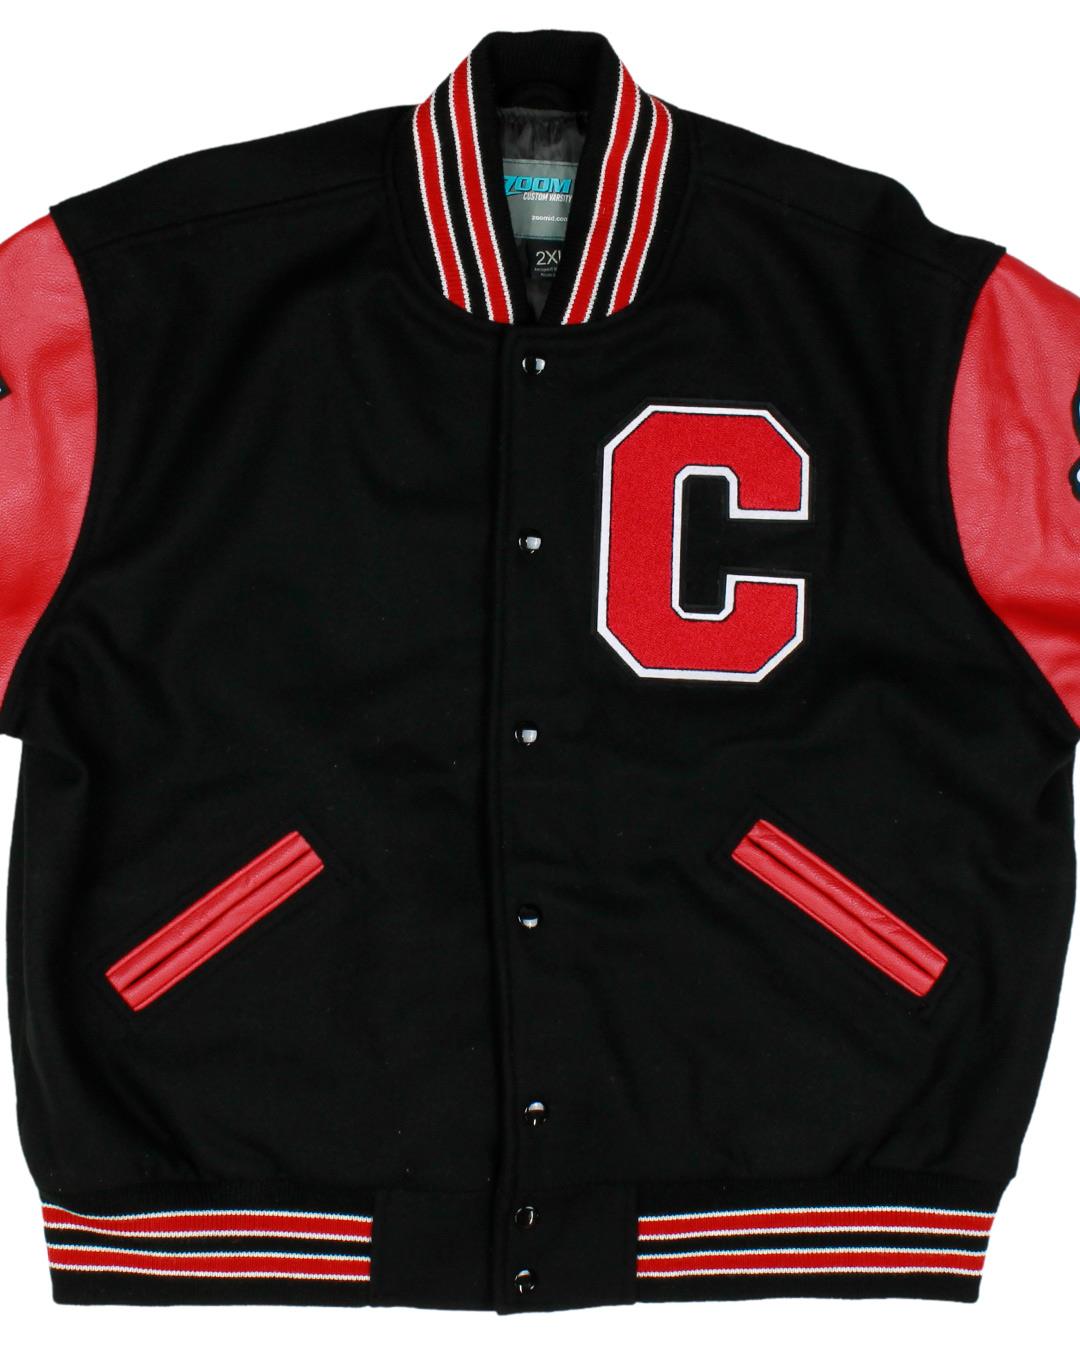 Caney High School Letterman Jacket, Caney, OK - Front